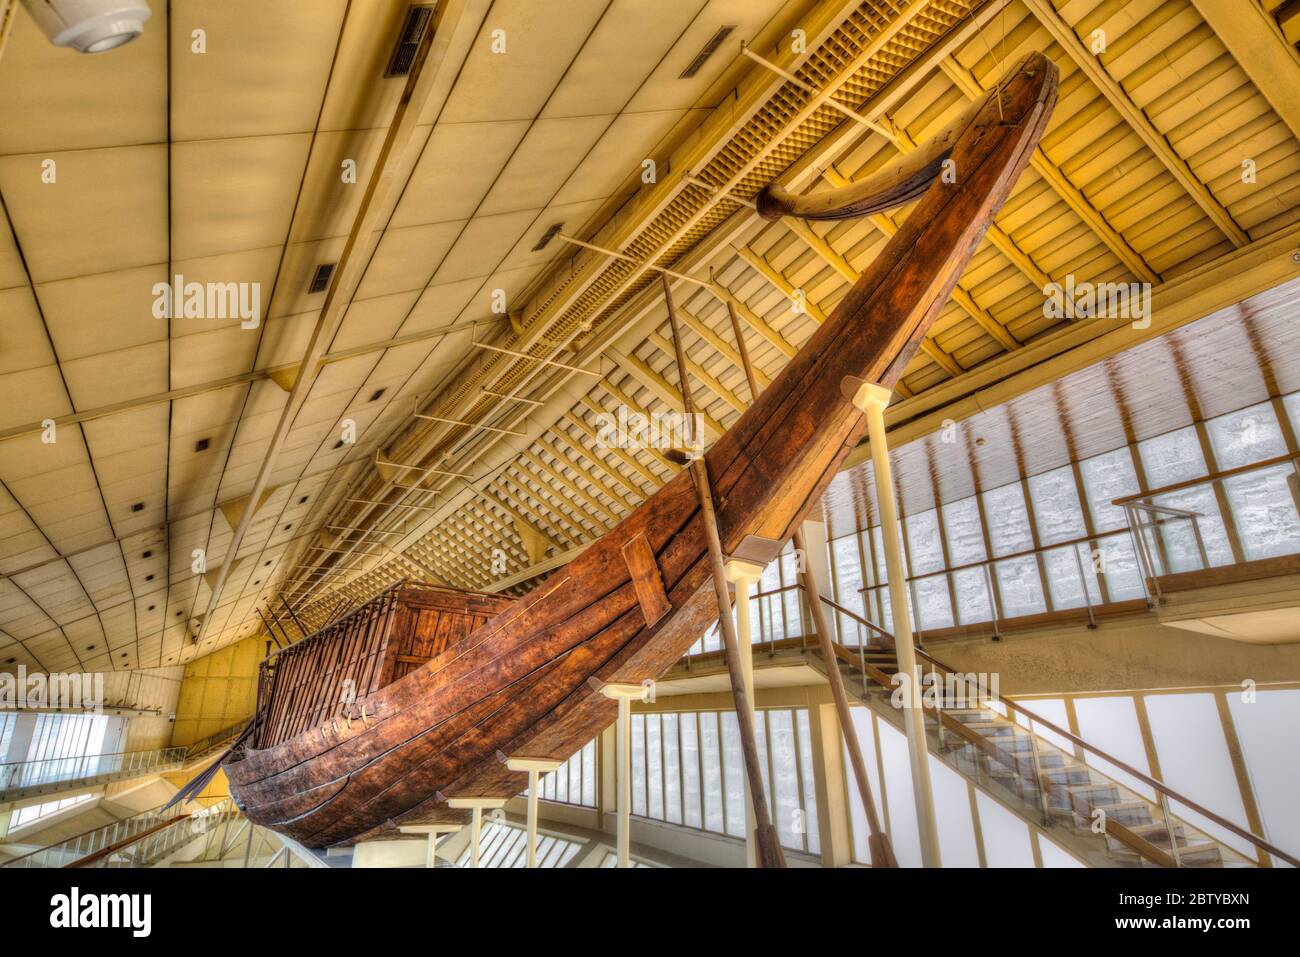 Das Khufu Schiff, Gizeh Solar Boat Museum, die Pyramiden von Gizeh, UNESCO Weltkulturerbe, Gizeh, Ägypten, Nordafrika, Afrika Stockfoto